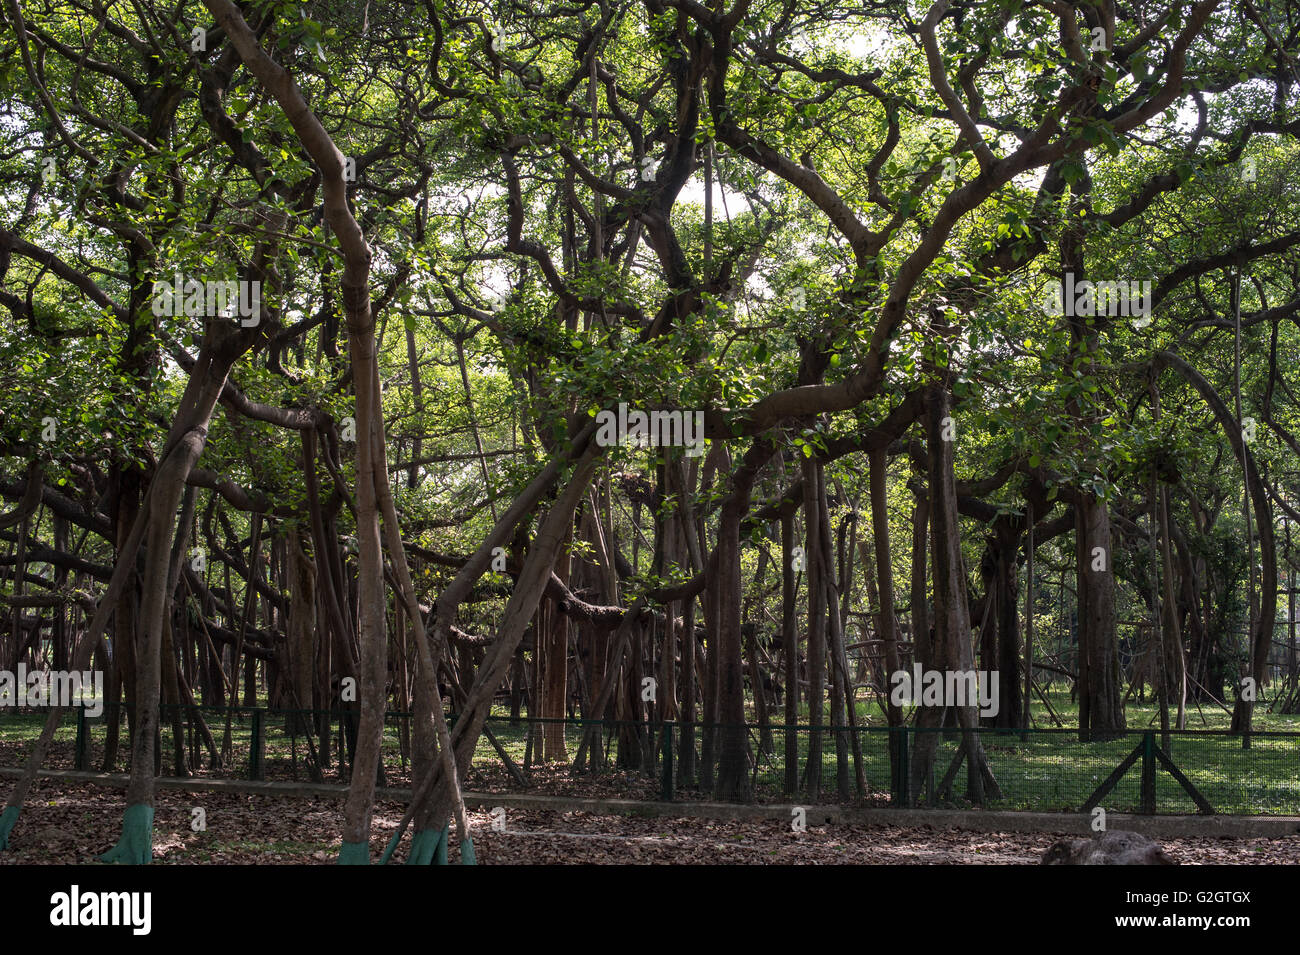 Ficus feige, indische Banyan, Moraceae, indischer Subkontinent, Asien Stockfoto